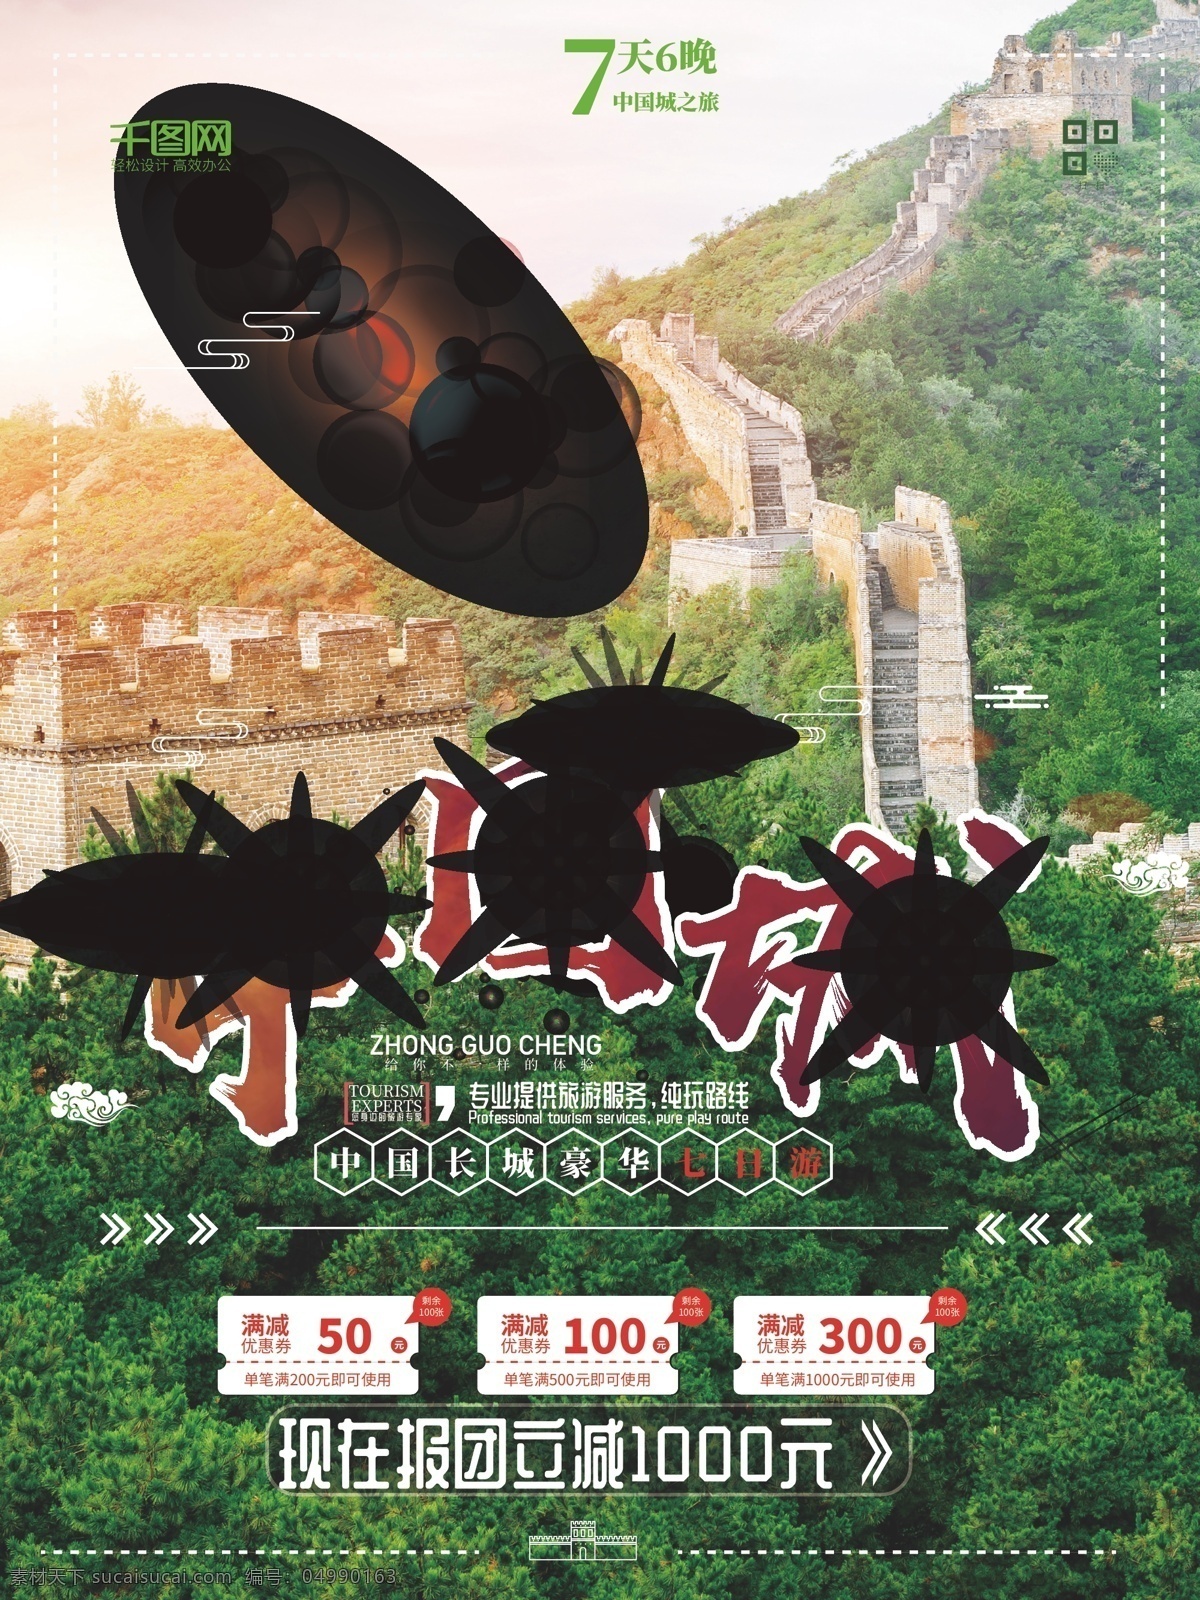 中国 古城 长城 旅游 城 海报 中国城 长城旅游海报 长城旅游促销 旅游活动 海拔